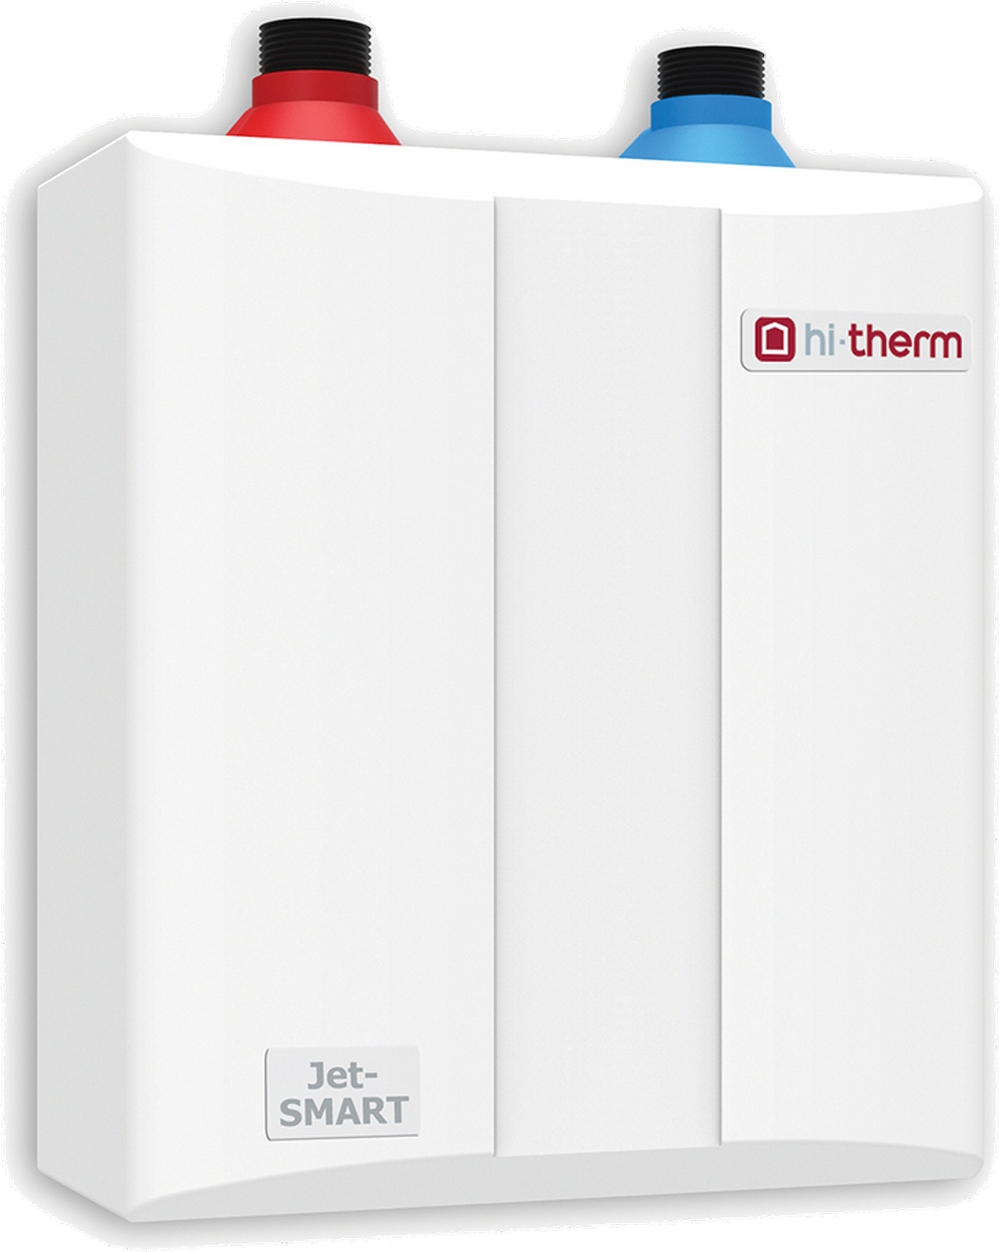 Безнапорный проточный водонагреватель Hi-Therm JET-SMART 4.0